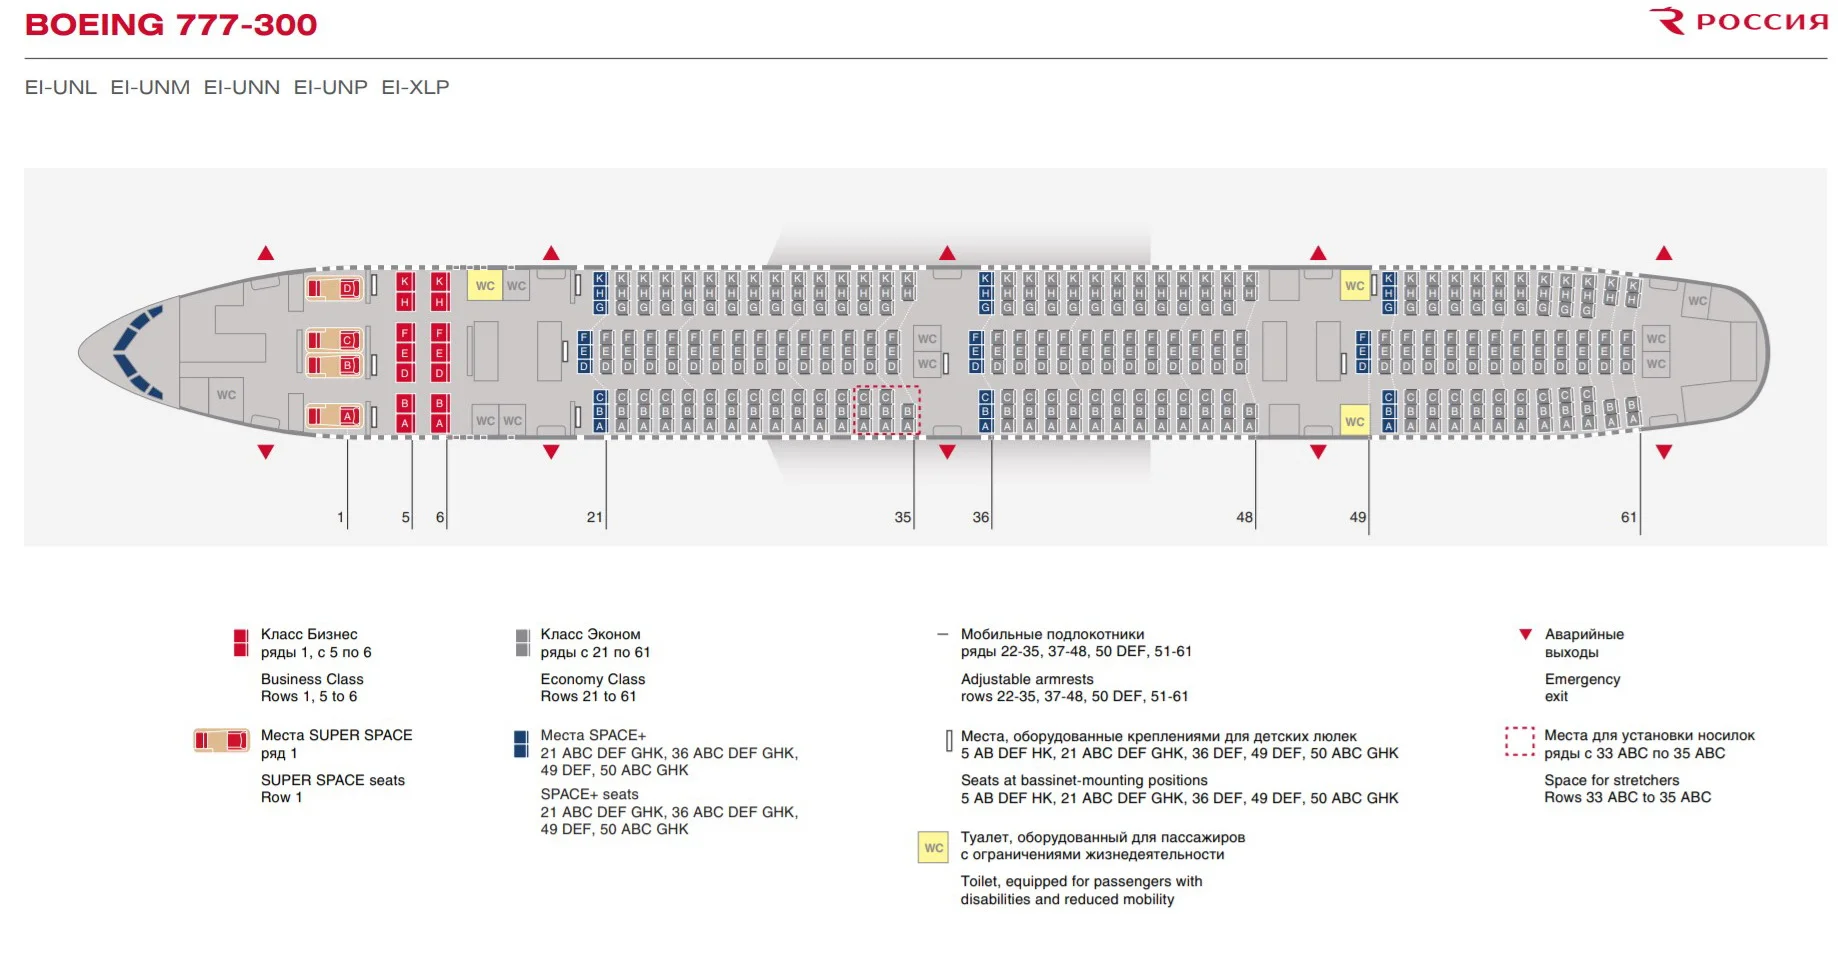 Обзор Boeing 777 а/к Россия — фото, видео, схема салона, питание, системаразвлечений